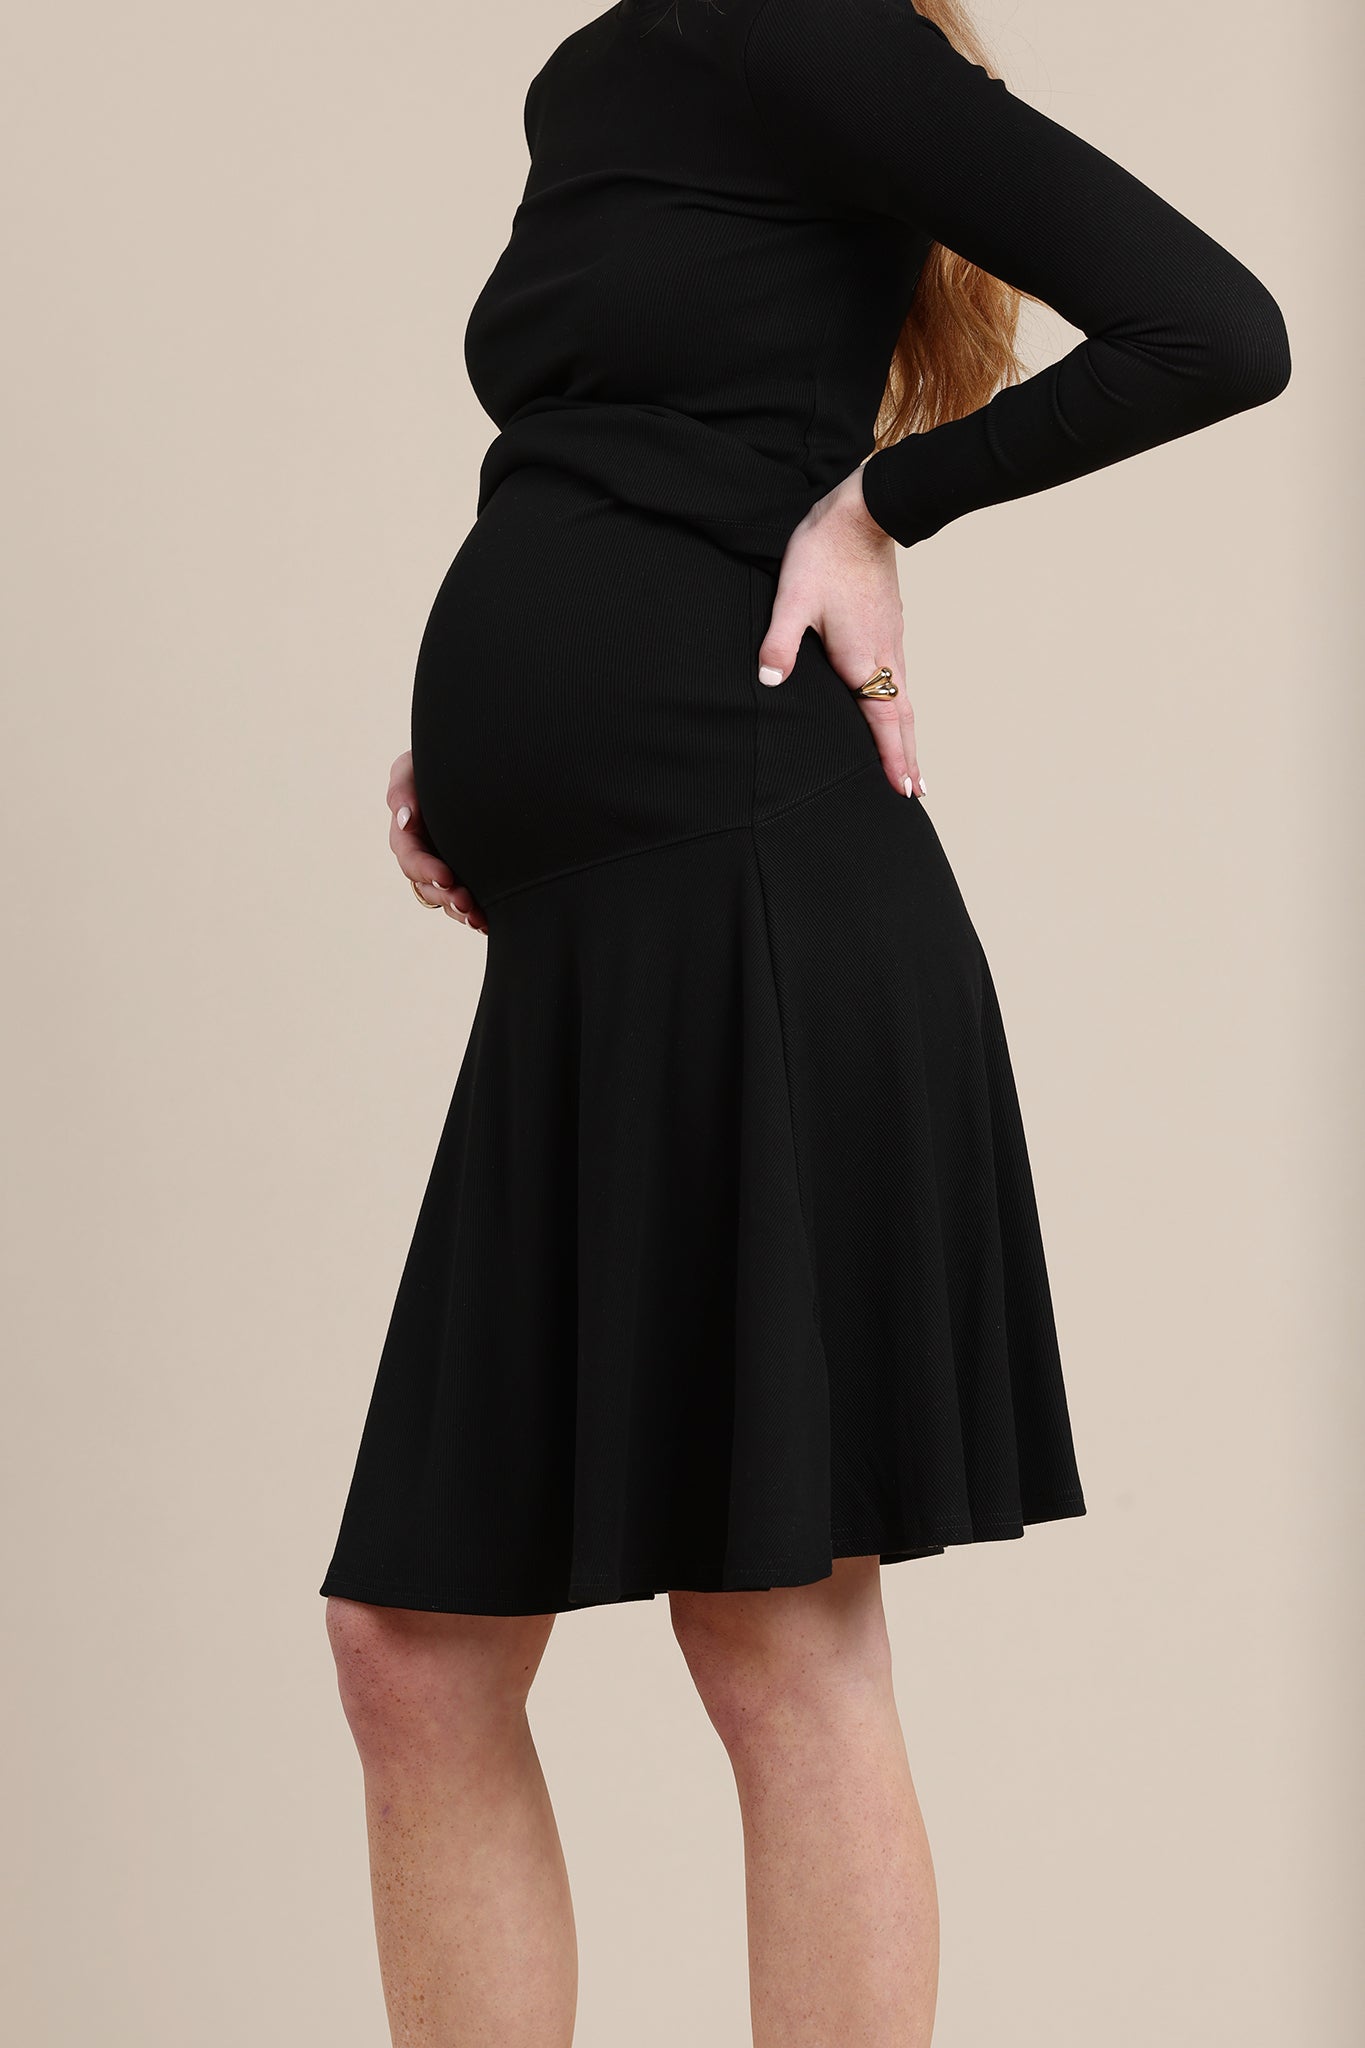 Amethyst Maternity Skirt in Black